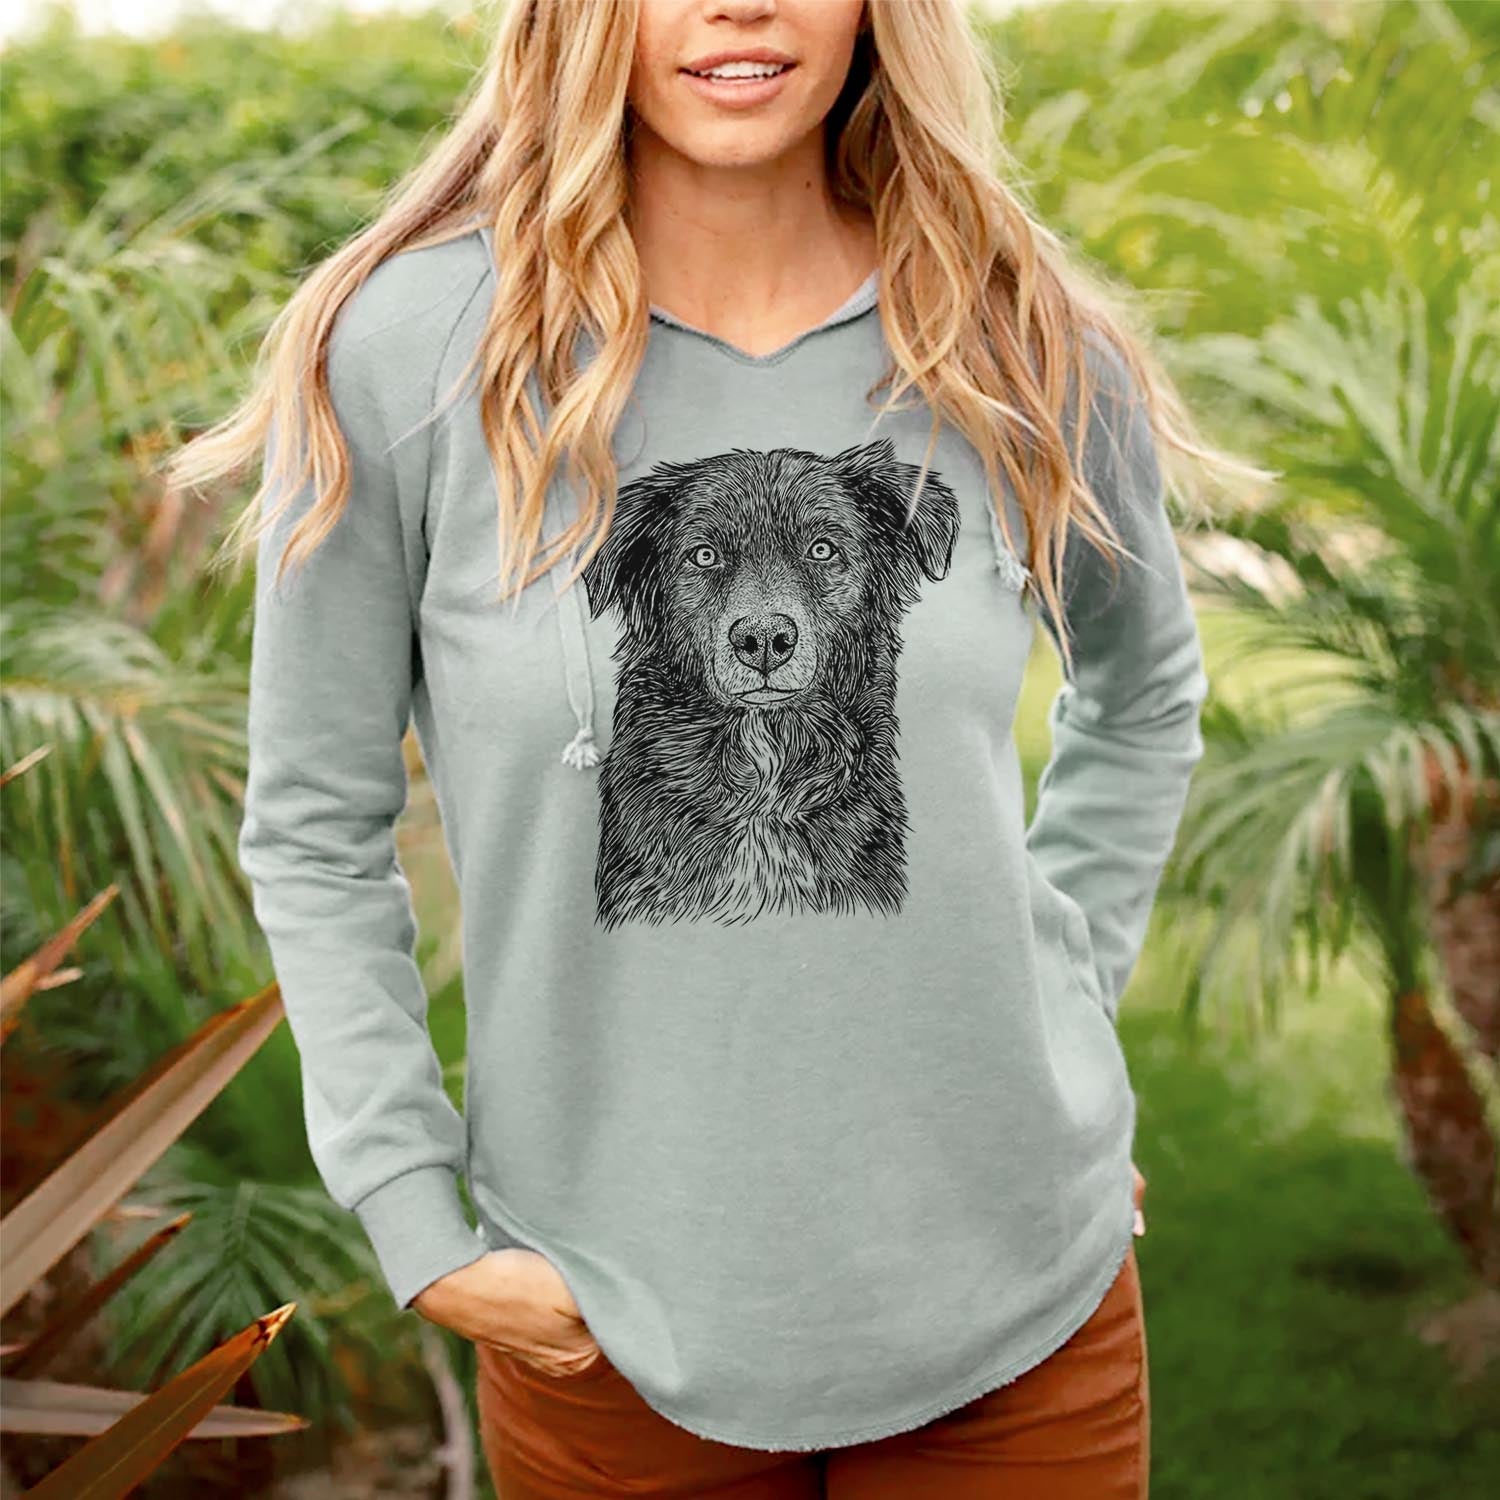 Pixel the Australian Shepherd - Cali Wave Hooded Sweatshirt